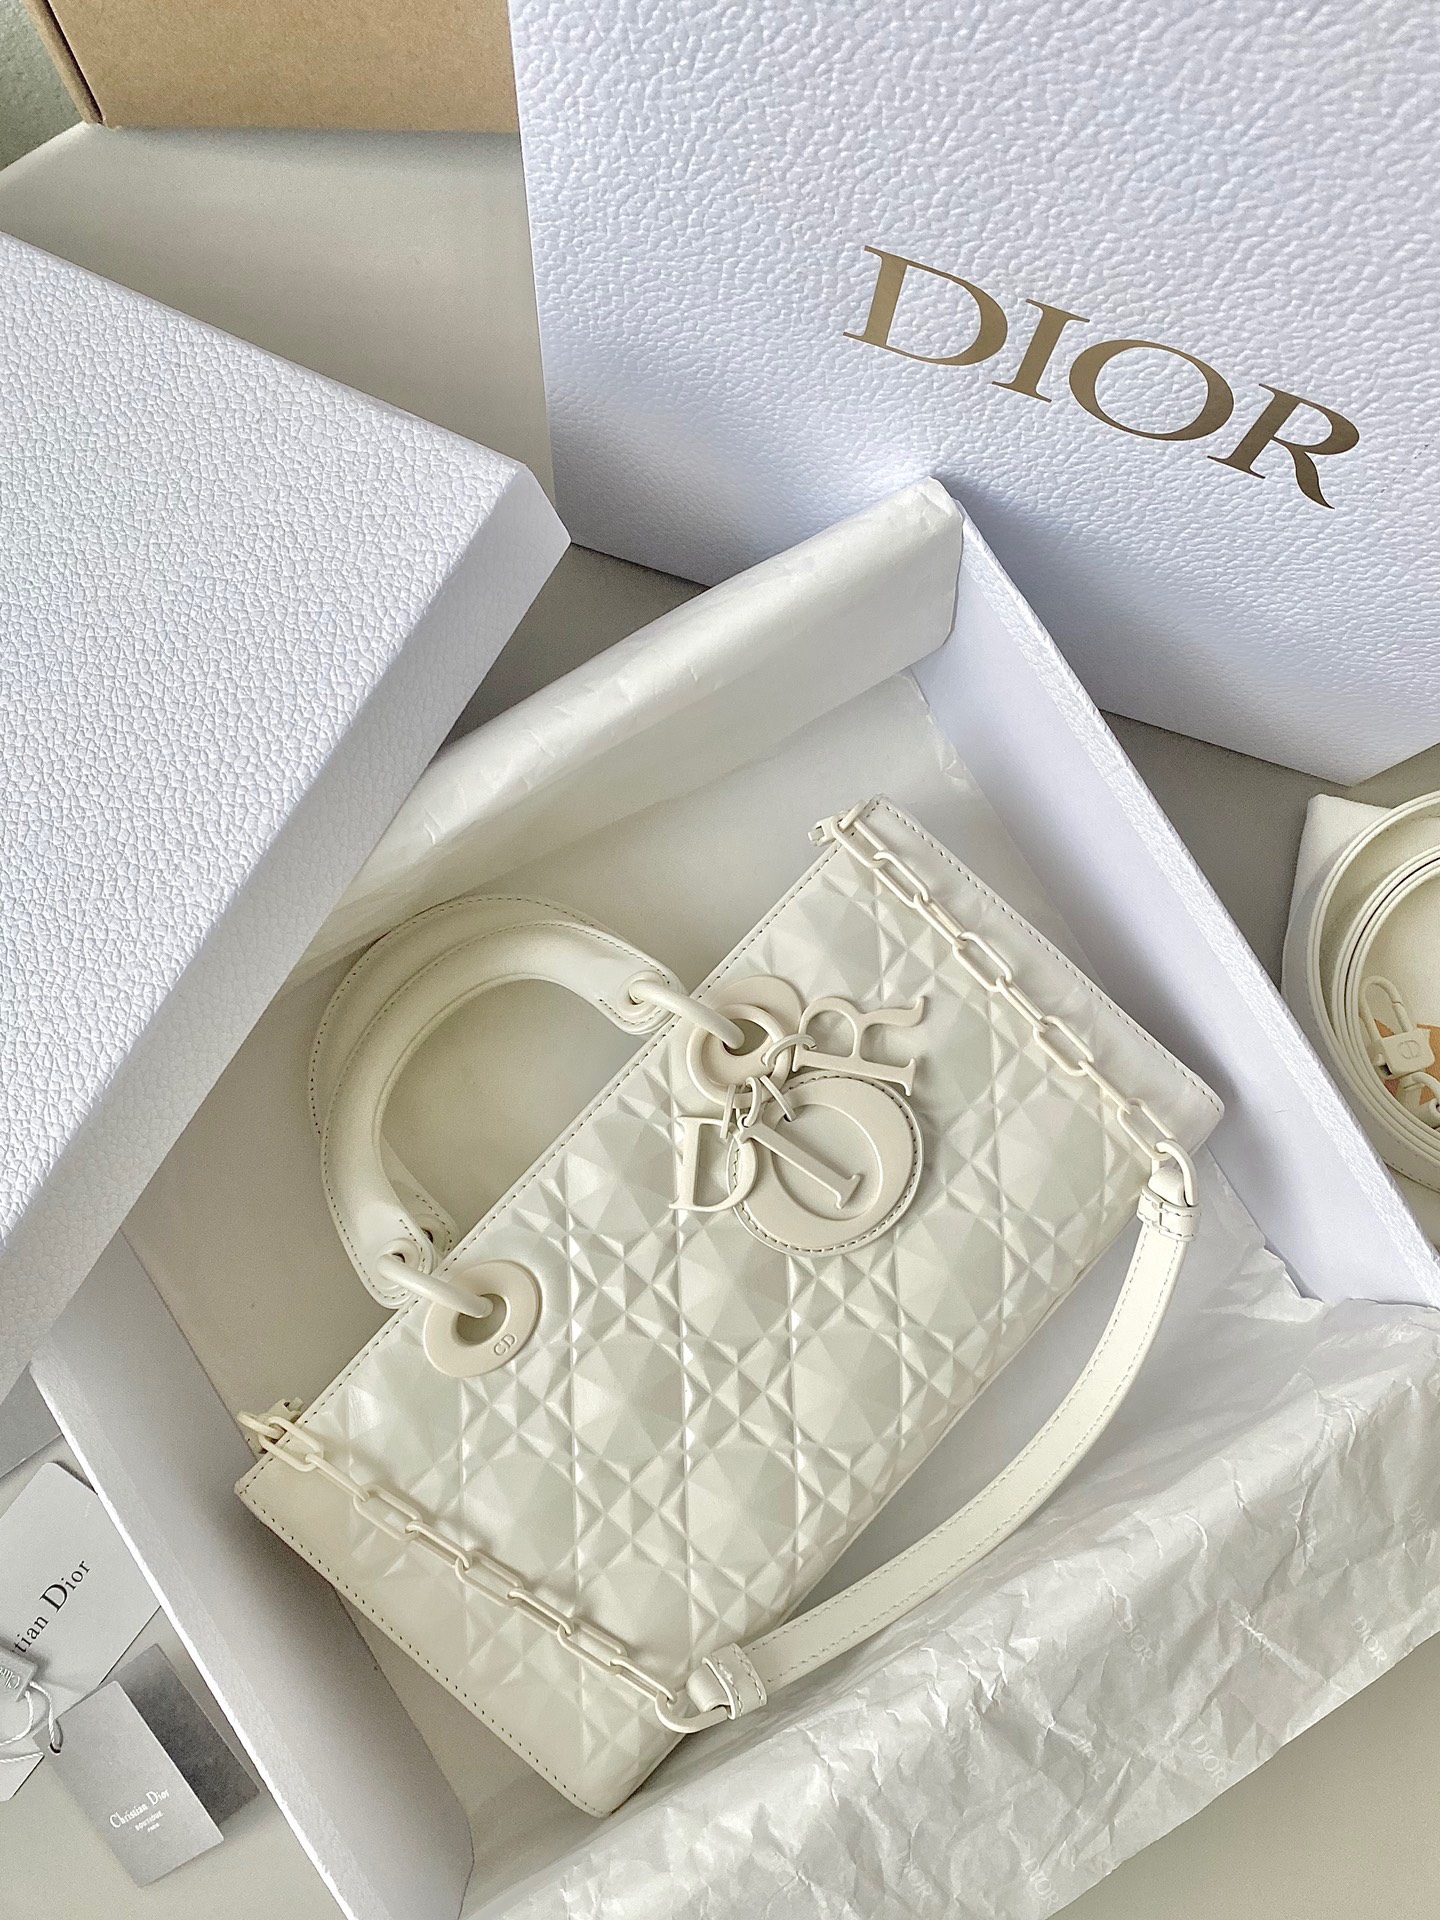 5 thay đổi bất ngờ của túi Dior chính hãng trong BST mới  Hàng Hiệu  Secondhand 2nd Mua bán hàng hiệu cũ còn tốt hàng Nhật chất lượng giá rẻ  2handgiarecomvn